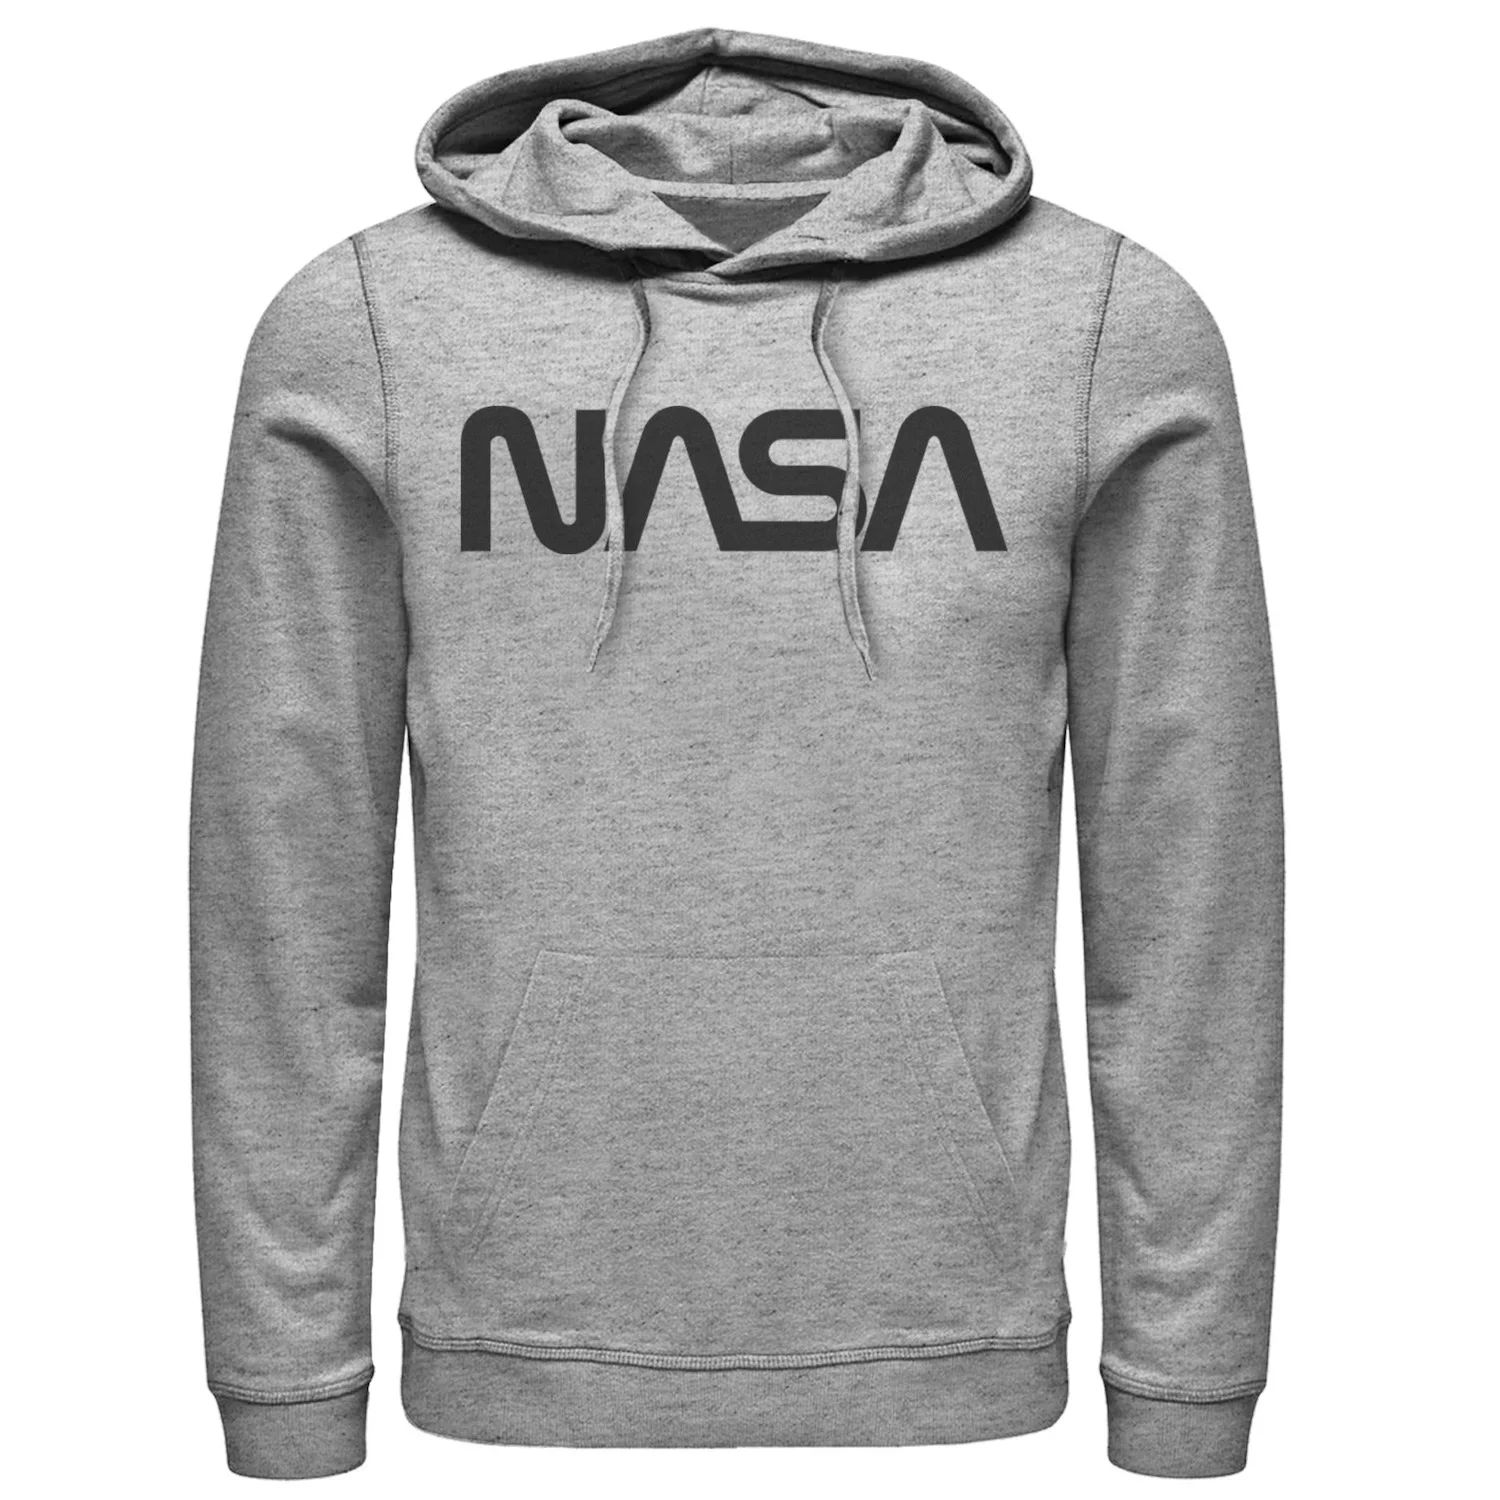 Мужская худи с графическим логотипом NASA и простым текстом Licensed Character